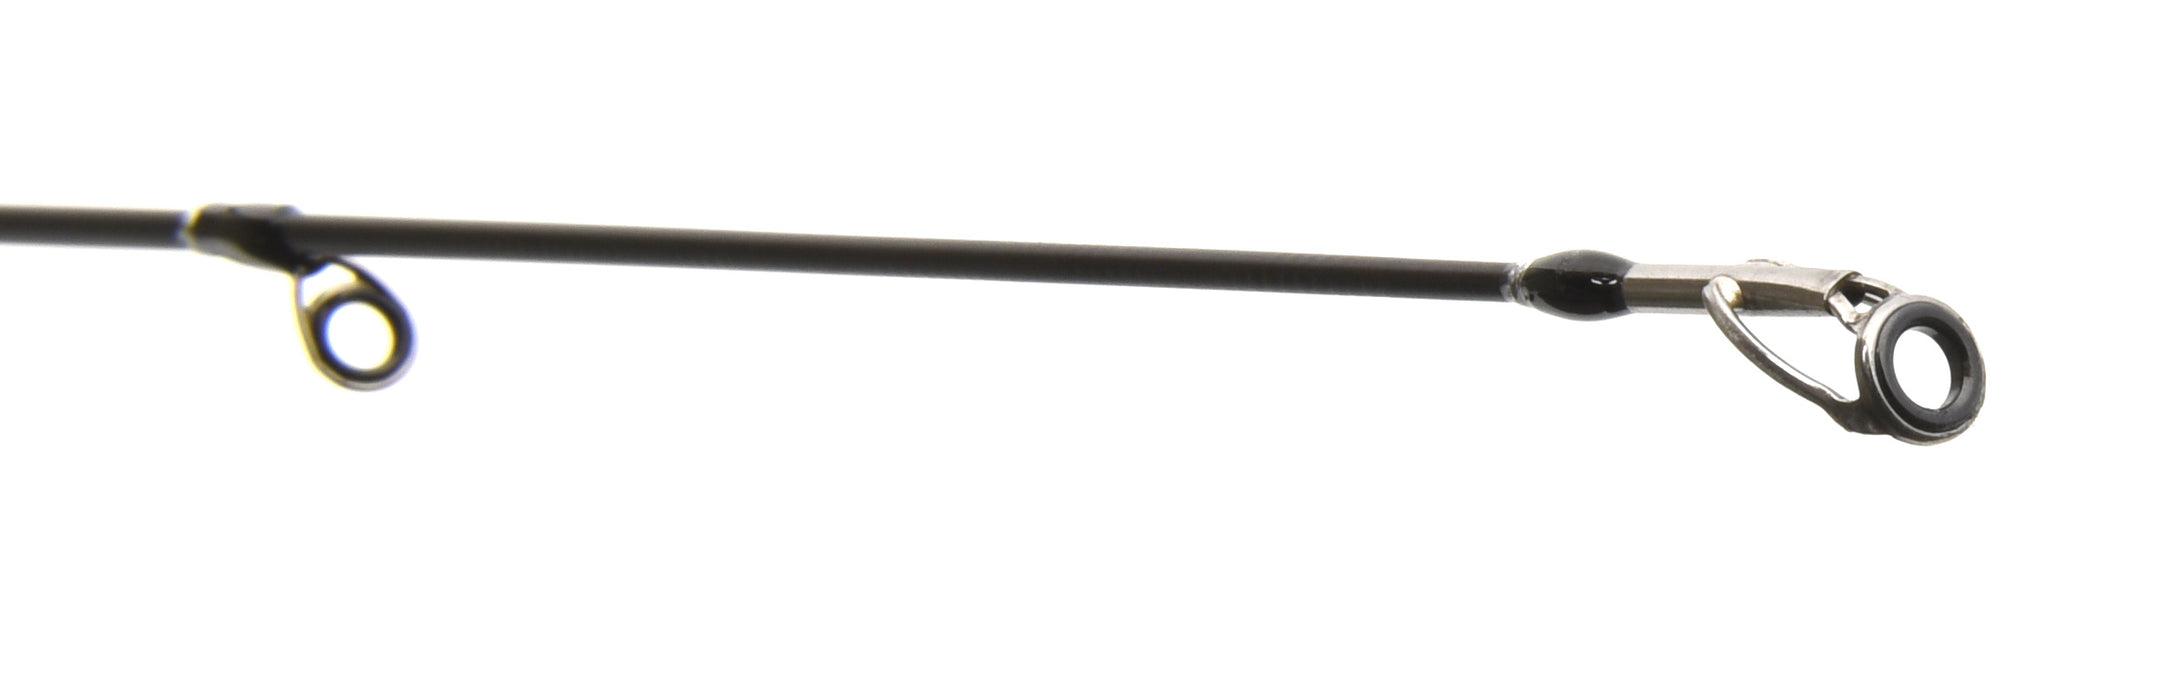 Patriot Seatrout rod, 8' 244cm, 10-30g, 2-piece